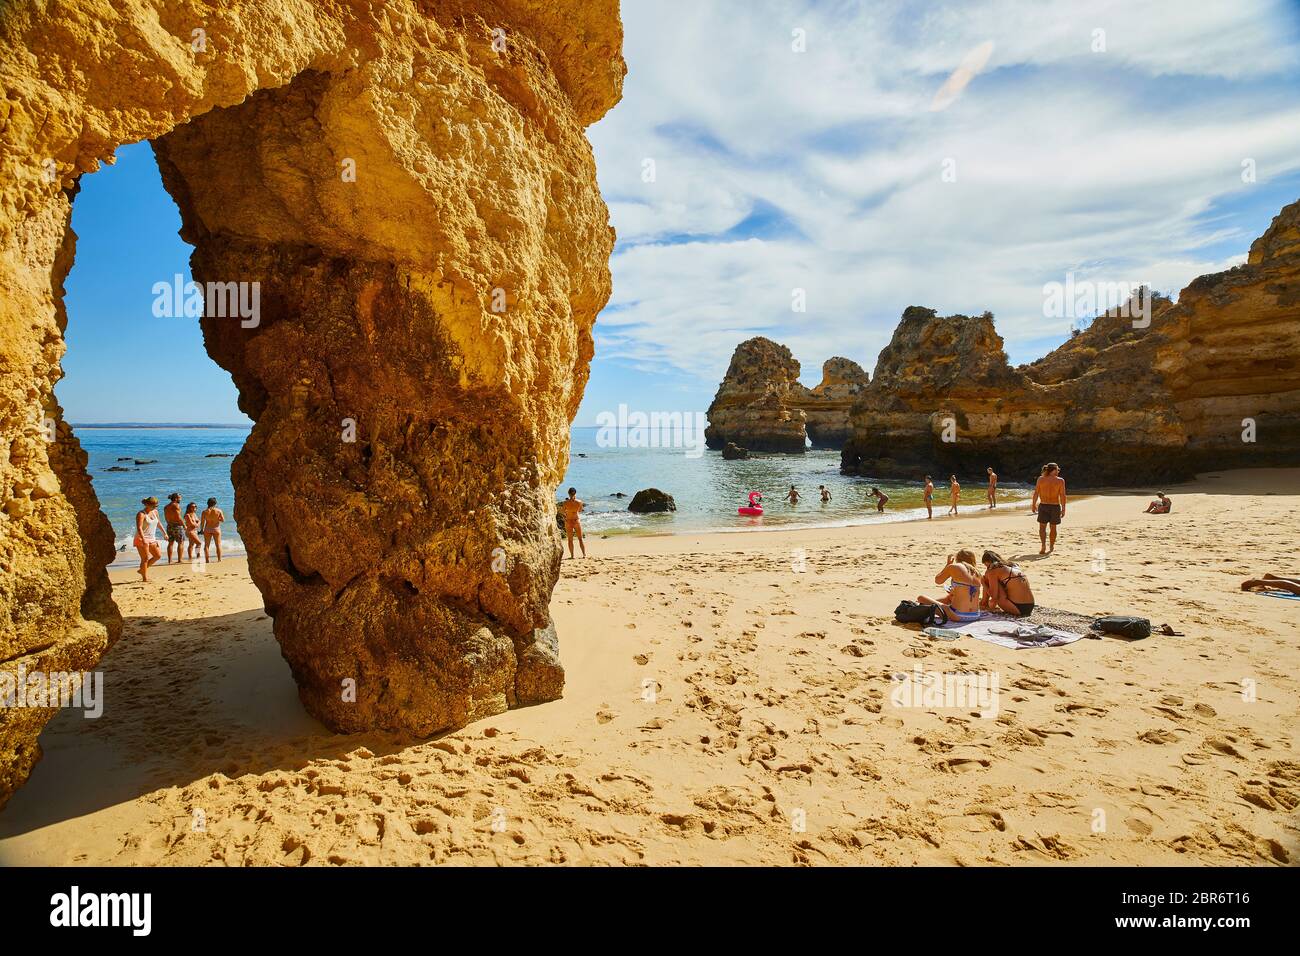 La gente si rilassa sulle spiagge di Lagos, Portogallo, dove spettacolari formazioni rocciose di arenaria si erigono dalle acque del Mar Mediterraneo Foto Stock